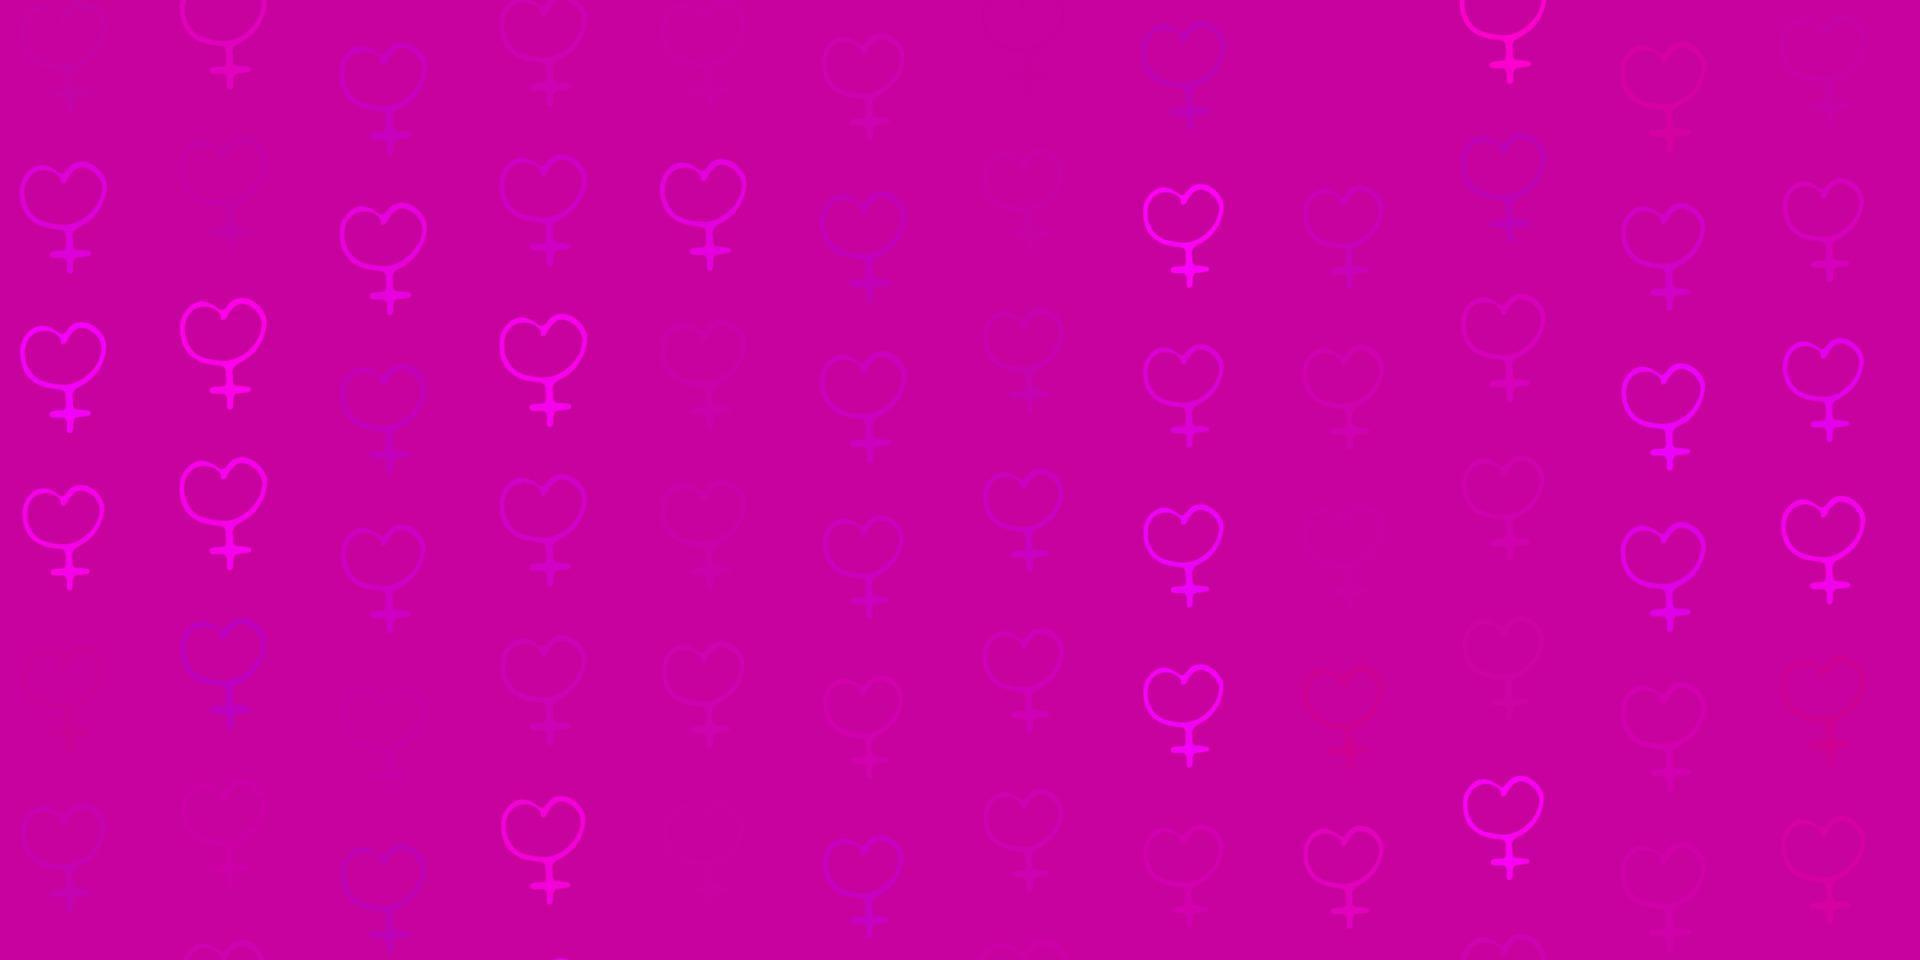 modello vettoriale rosa chiaro con elementi di femminismo.